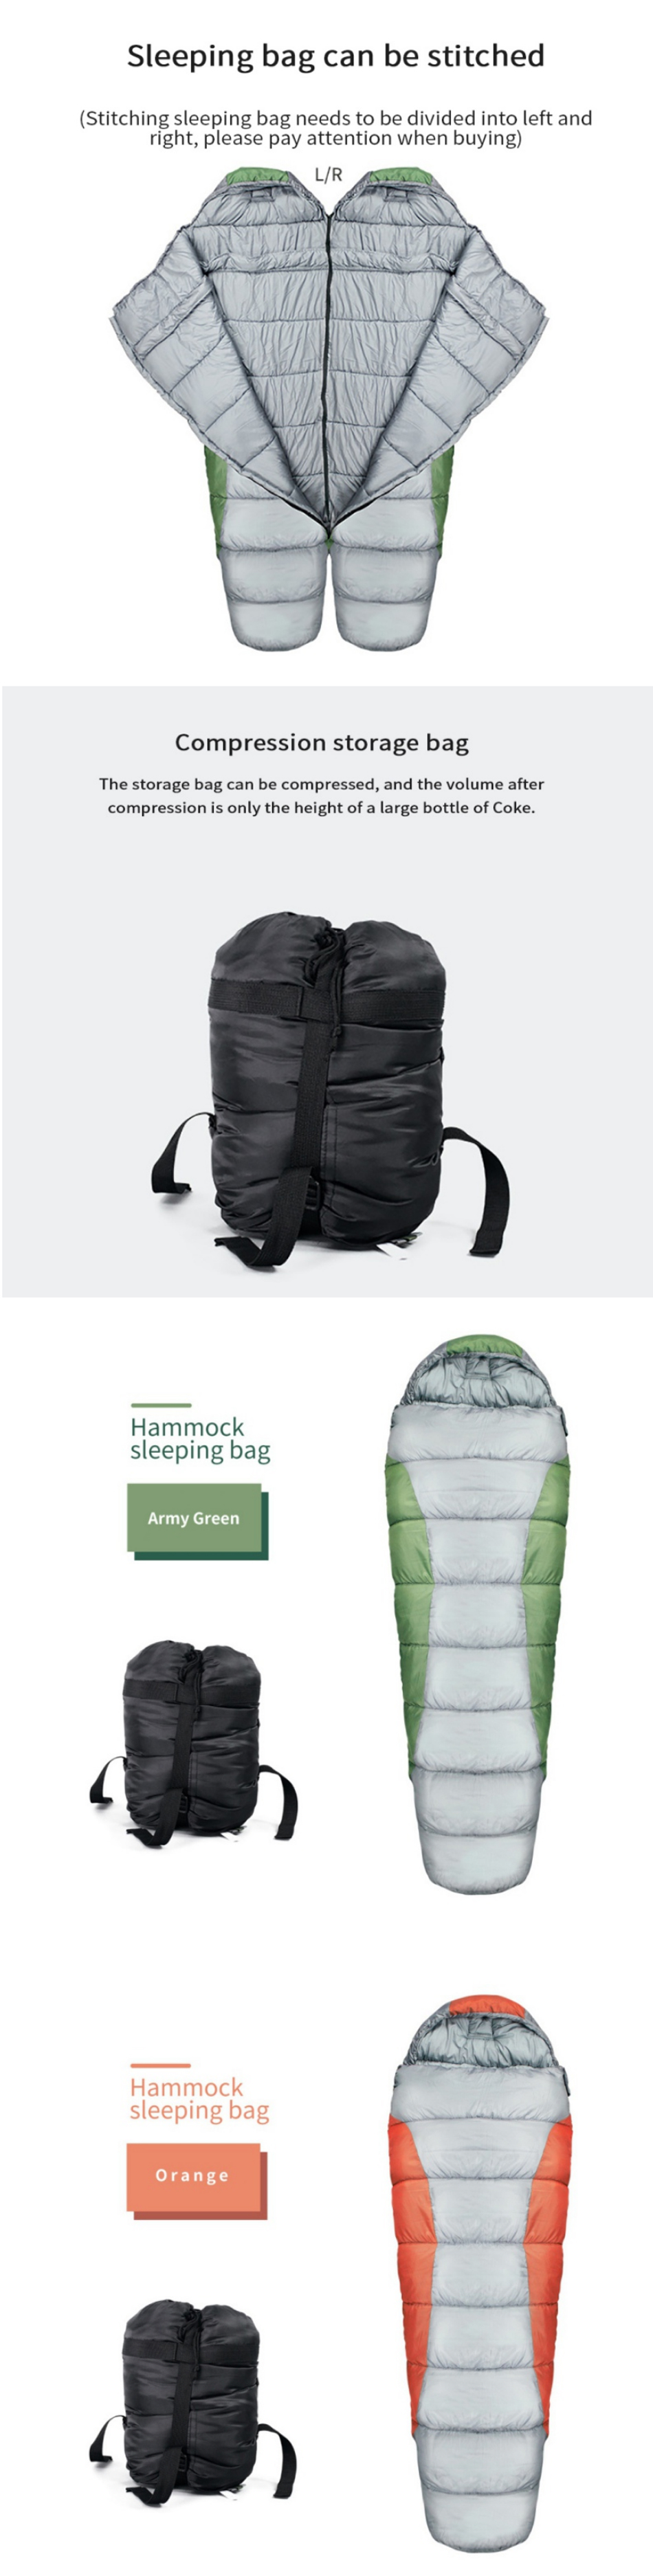 IPREEreg--15-0-Adult-Camping-Hiking-Sleeping-Bag-Lightweight-Down-Backpacking-Hammock-Sleep-Bag-Outd-1752854-2